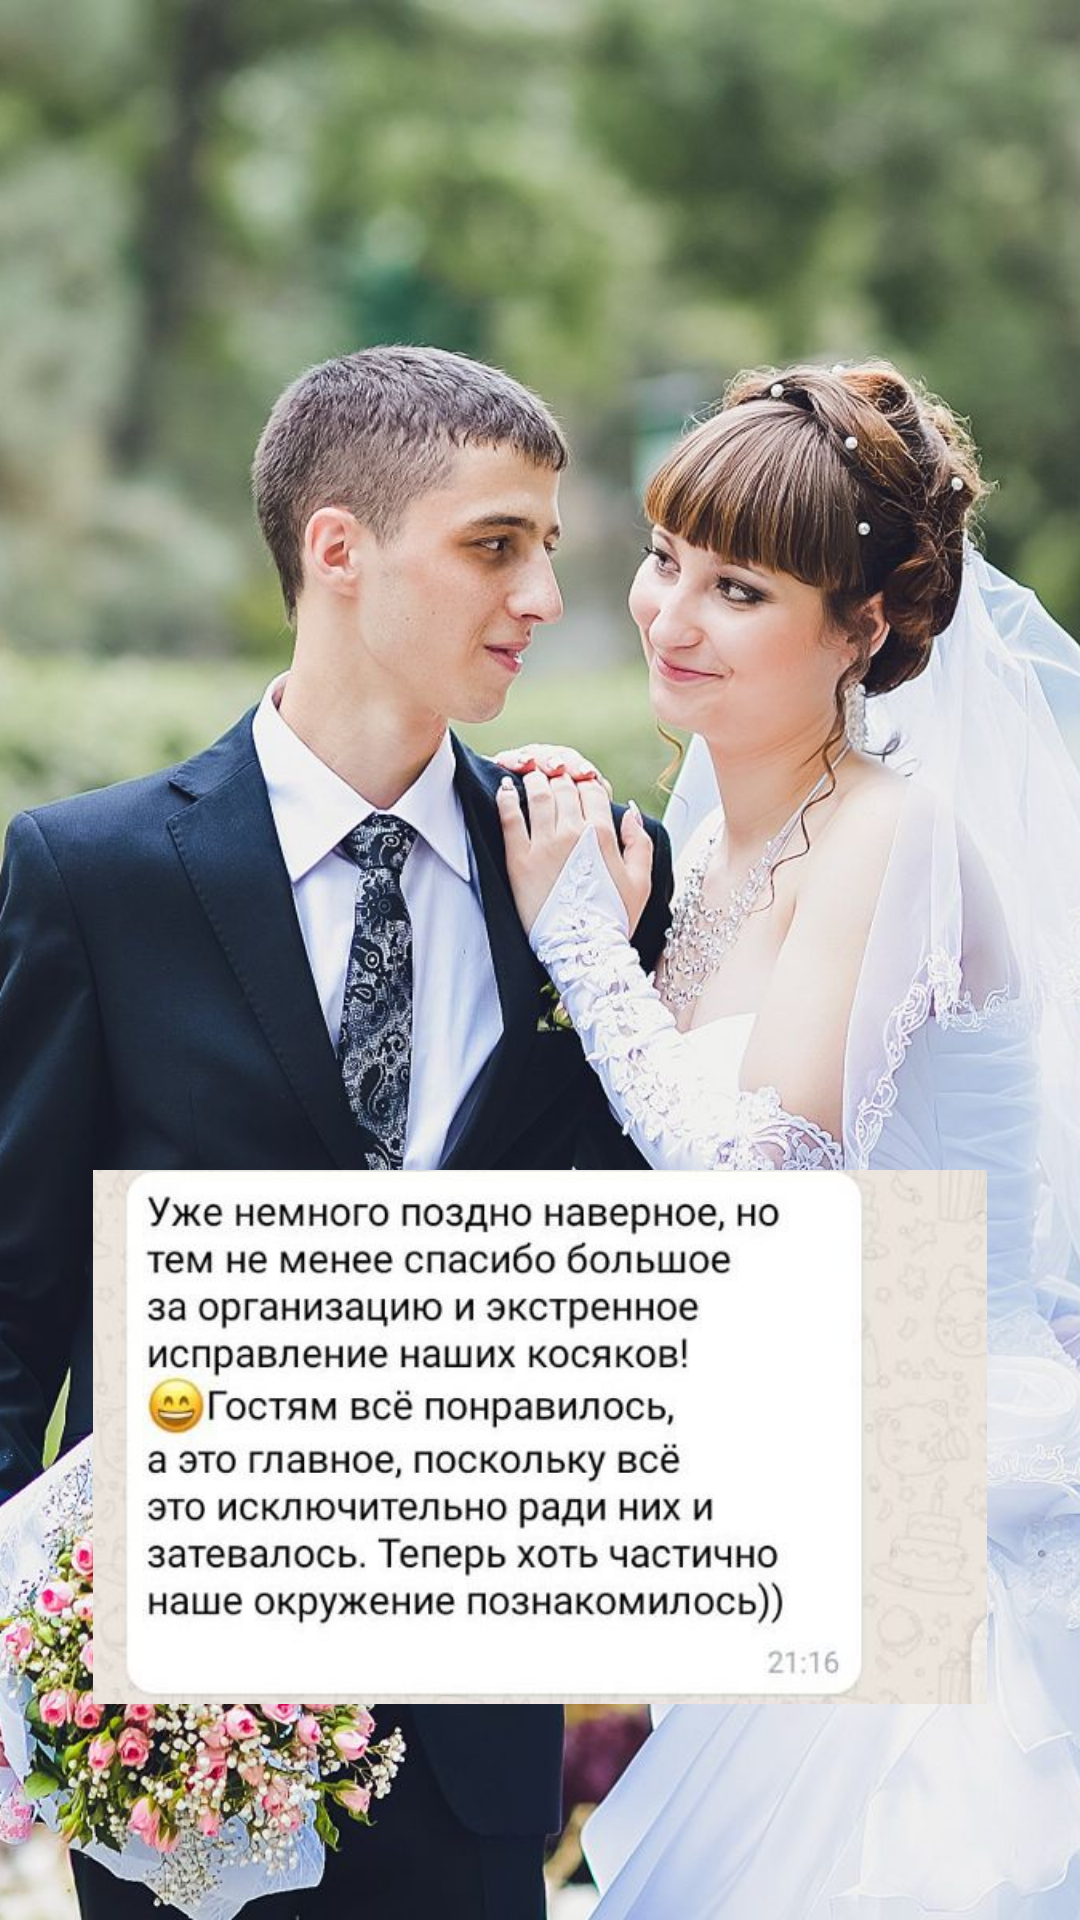 Организация свадьбы в Омске
от компании Pandaevent